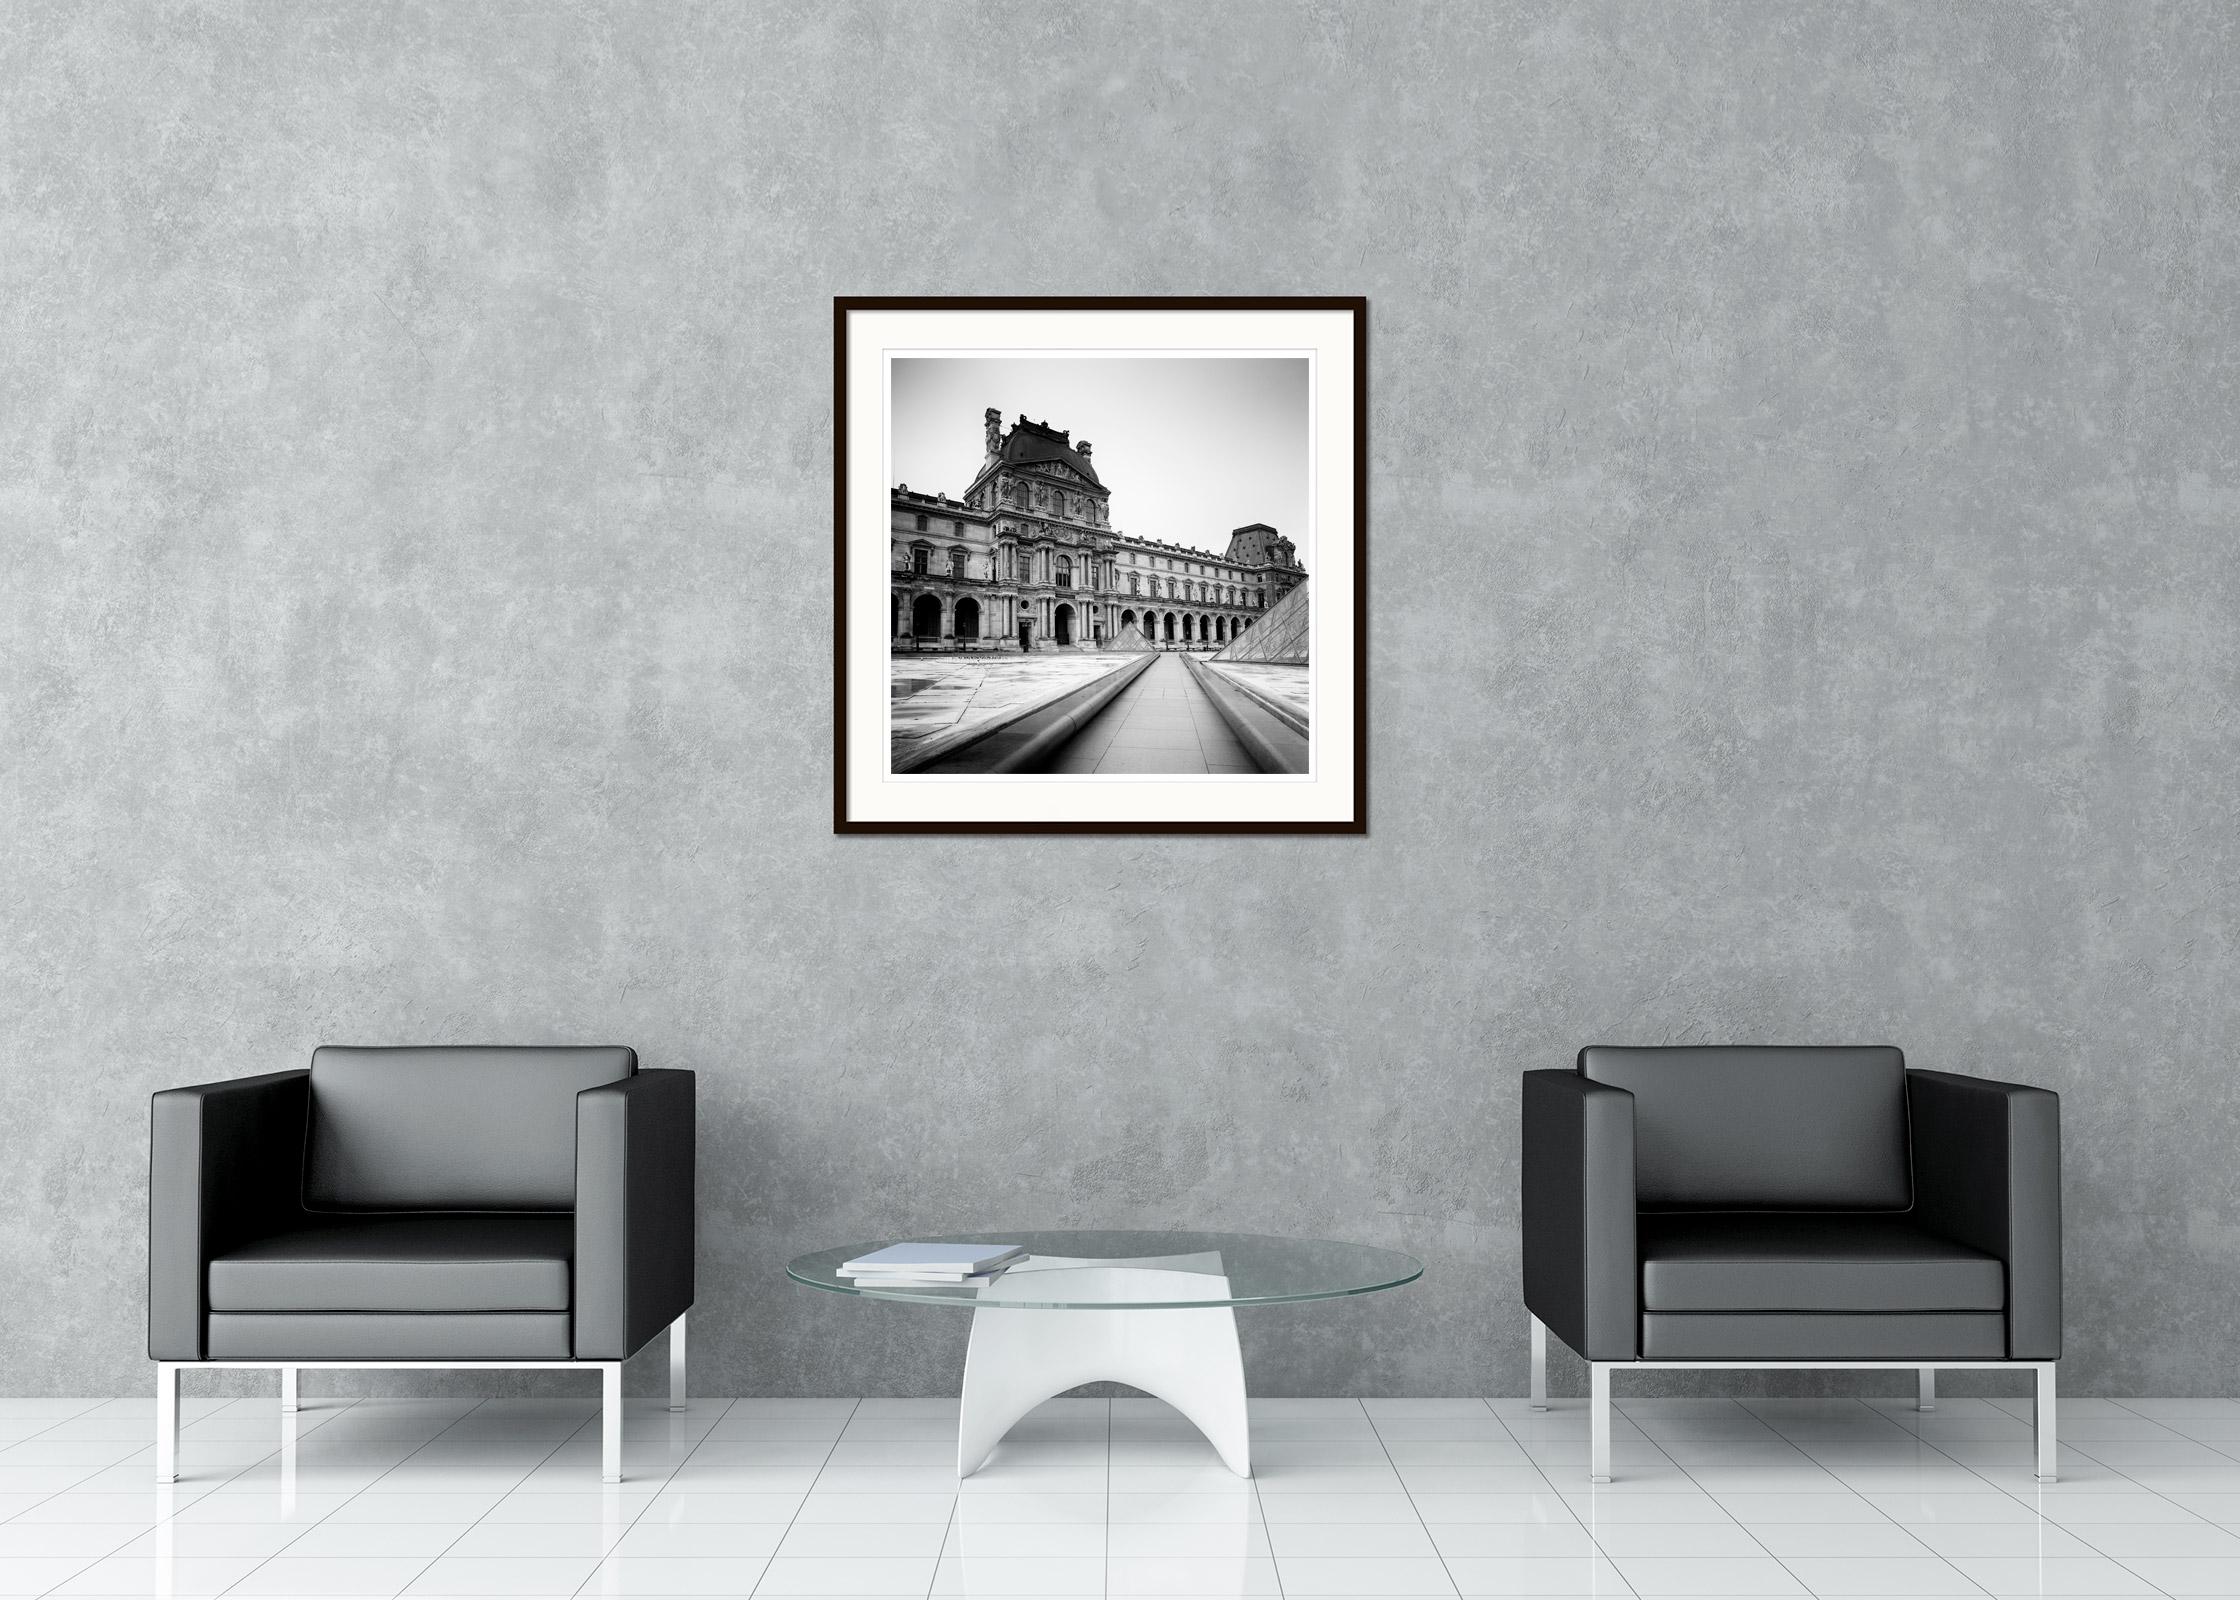 Photographie de paysage urbain en noir et blanc - Tirage analogique de l'impressionnant bâtiment d'architecture Pavillon Denon Louvre à Paris, France. Épreuve à l'encre pigmentaire d'archives, édition de 9 exemplaires. Signée, titrée, datée et